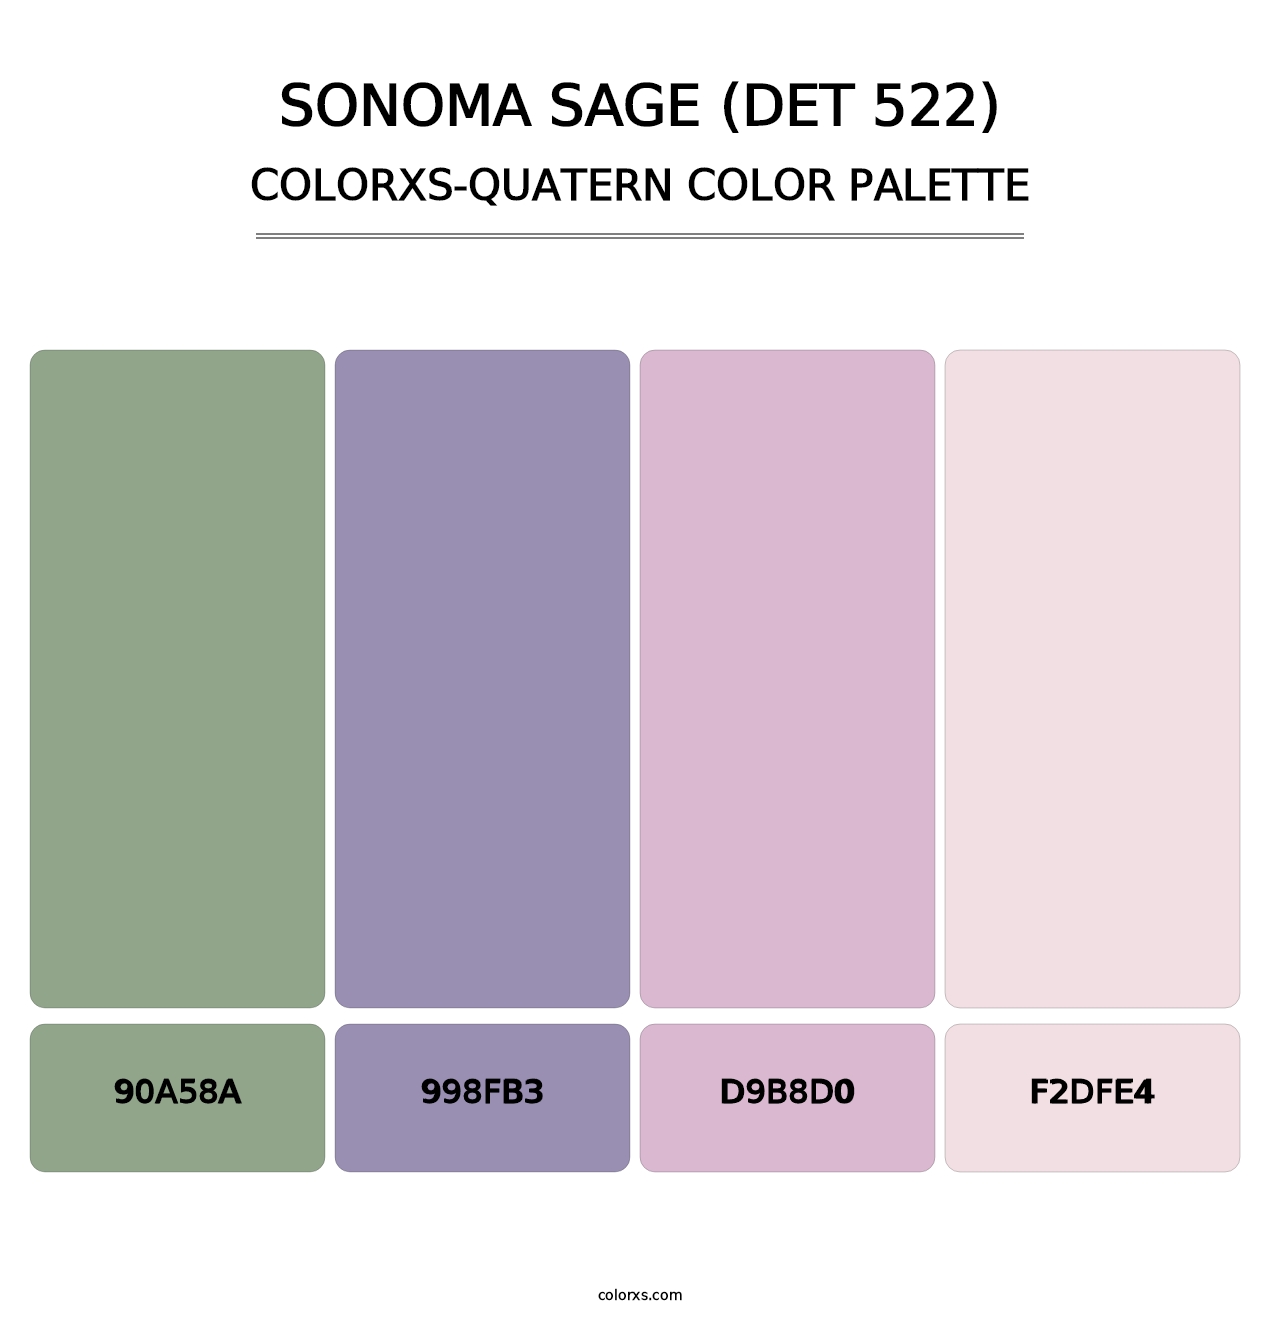 Sonoma Sage (DET 522) - Colorxs Quatern Palette